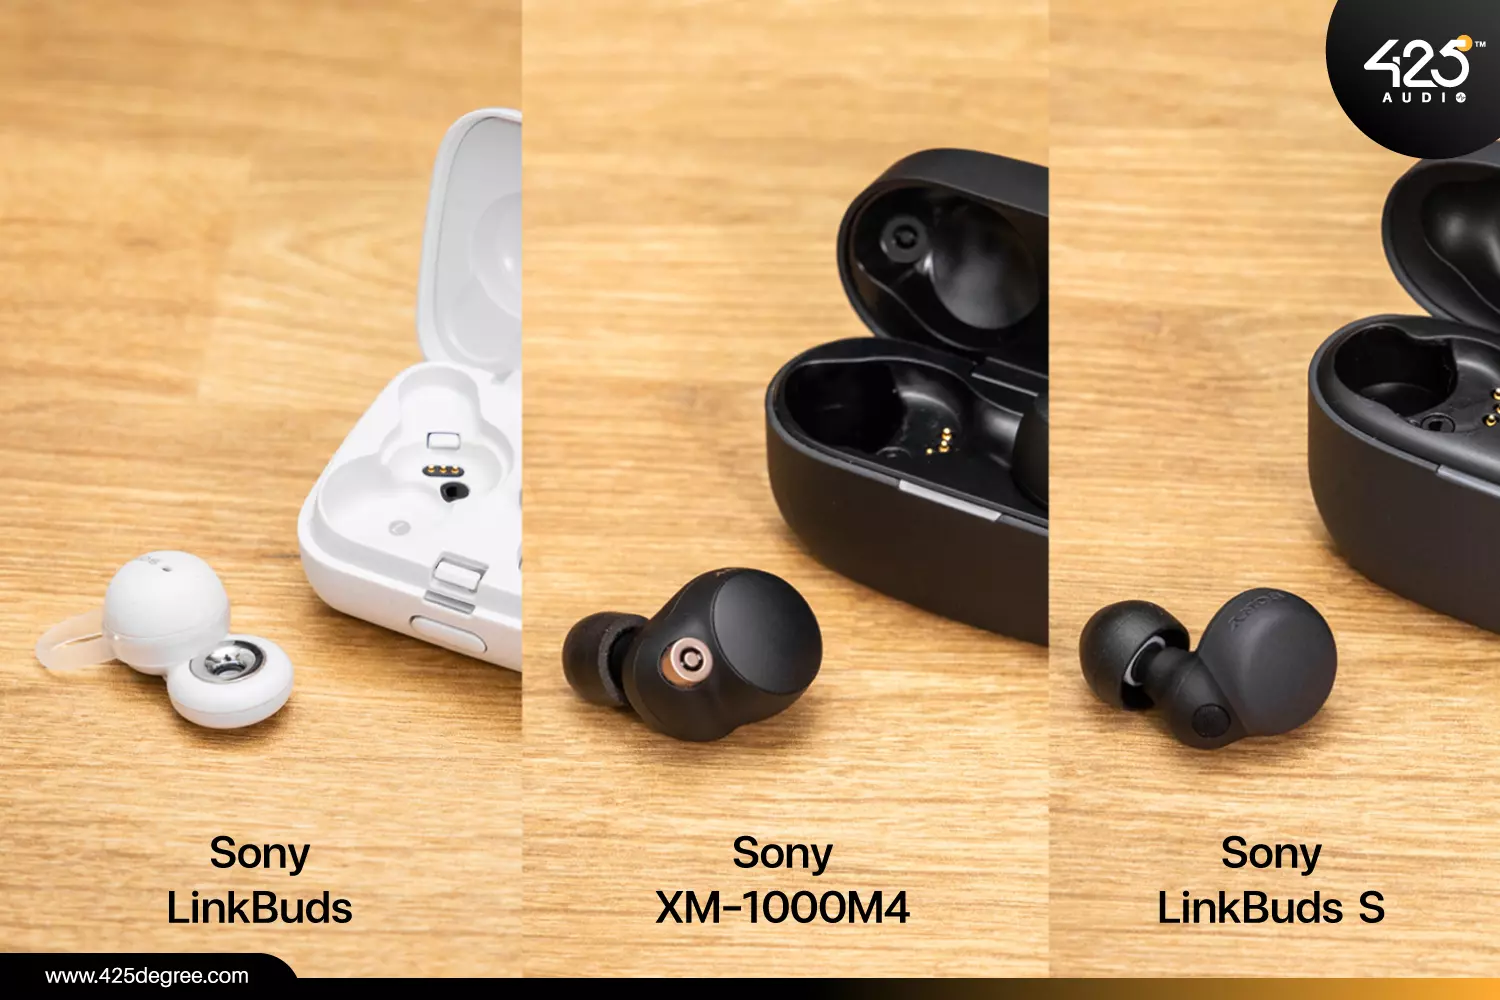 หูฟัง Sony 3 รุ่นนี้ต่างกันยังไง ? แล้วคุณล่ะเหมาะกับตัวไหน ? รีวิวชัด  คัดของดี สั่งง่าย ส่งไว ได้ของชัวร์